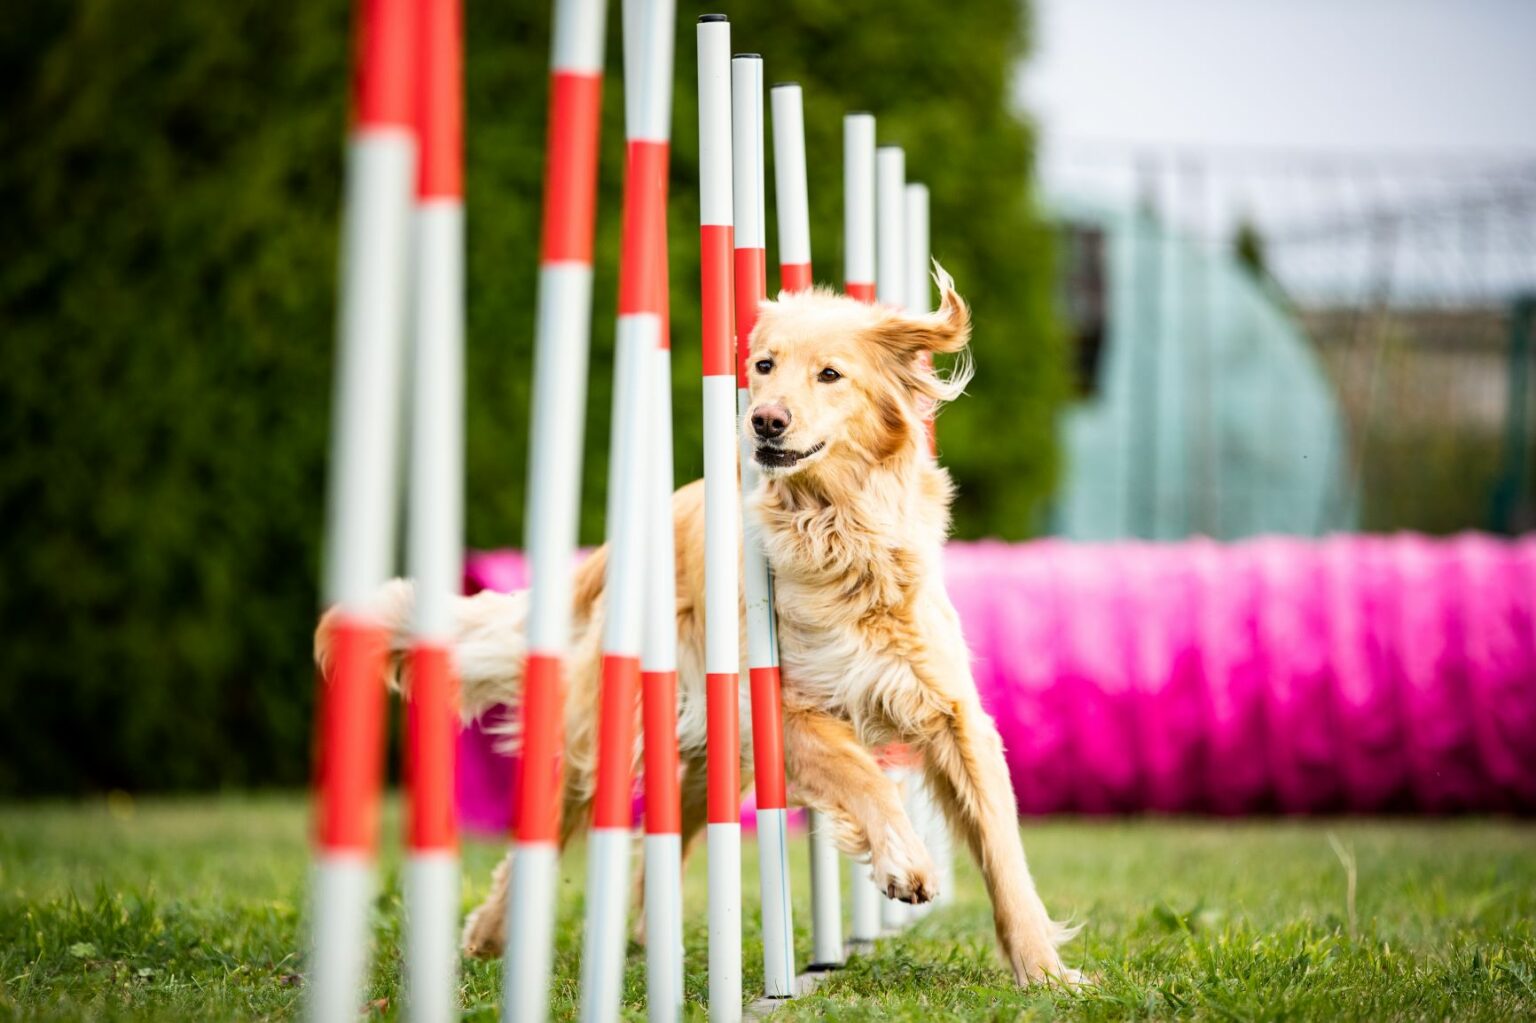 Dog doing agility training